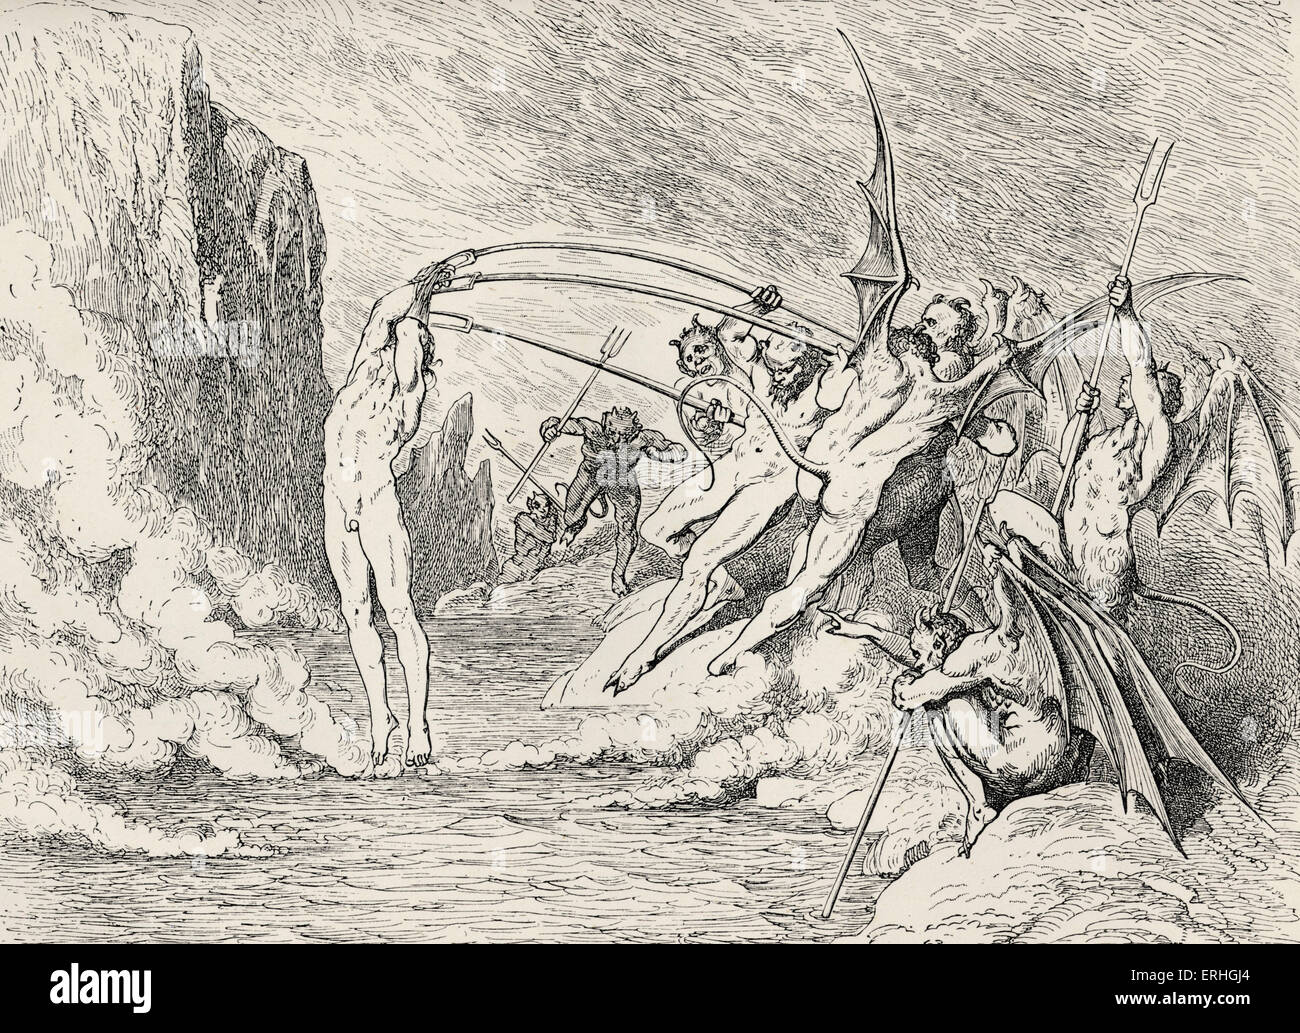 Dante Alighieri, La Divina Commedia, L'Inferno (The Divine Comedy, Hell) - Canto XXI (21): illustration by Gustave Doré for Stock Photo